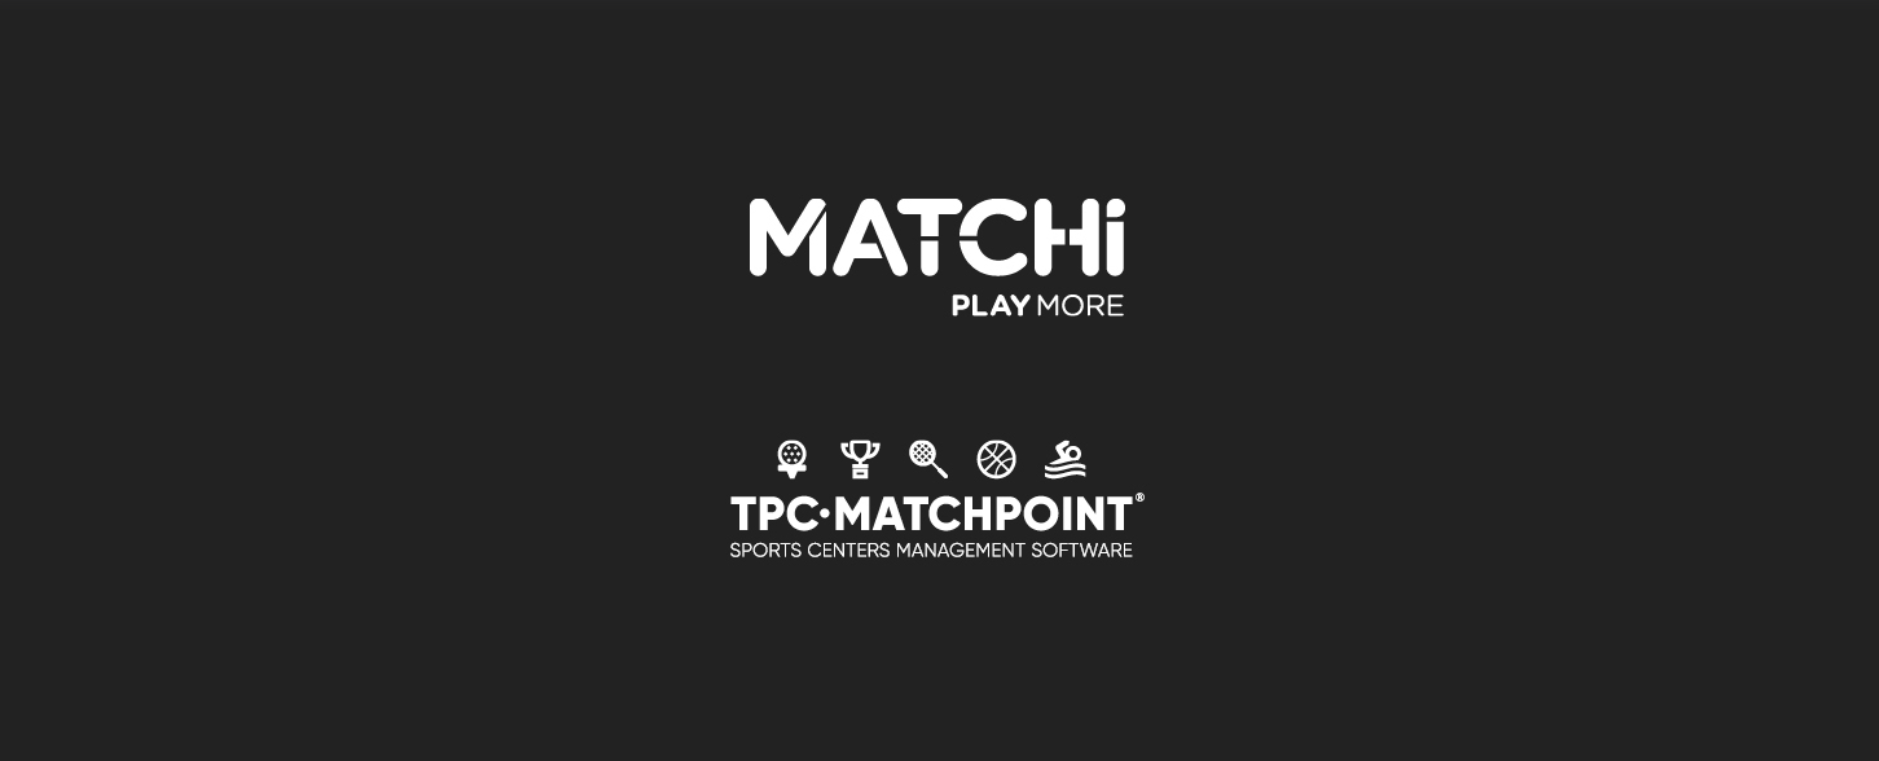 TPC Matchpoint collabora con MATCHi, creando una delle più grandi reti di sport con racchetta al mondo!